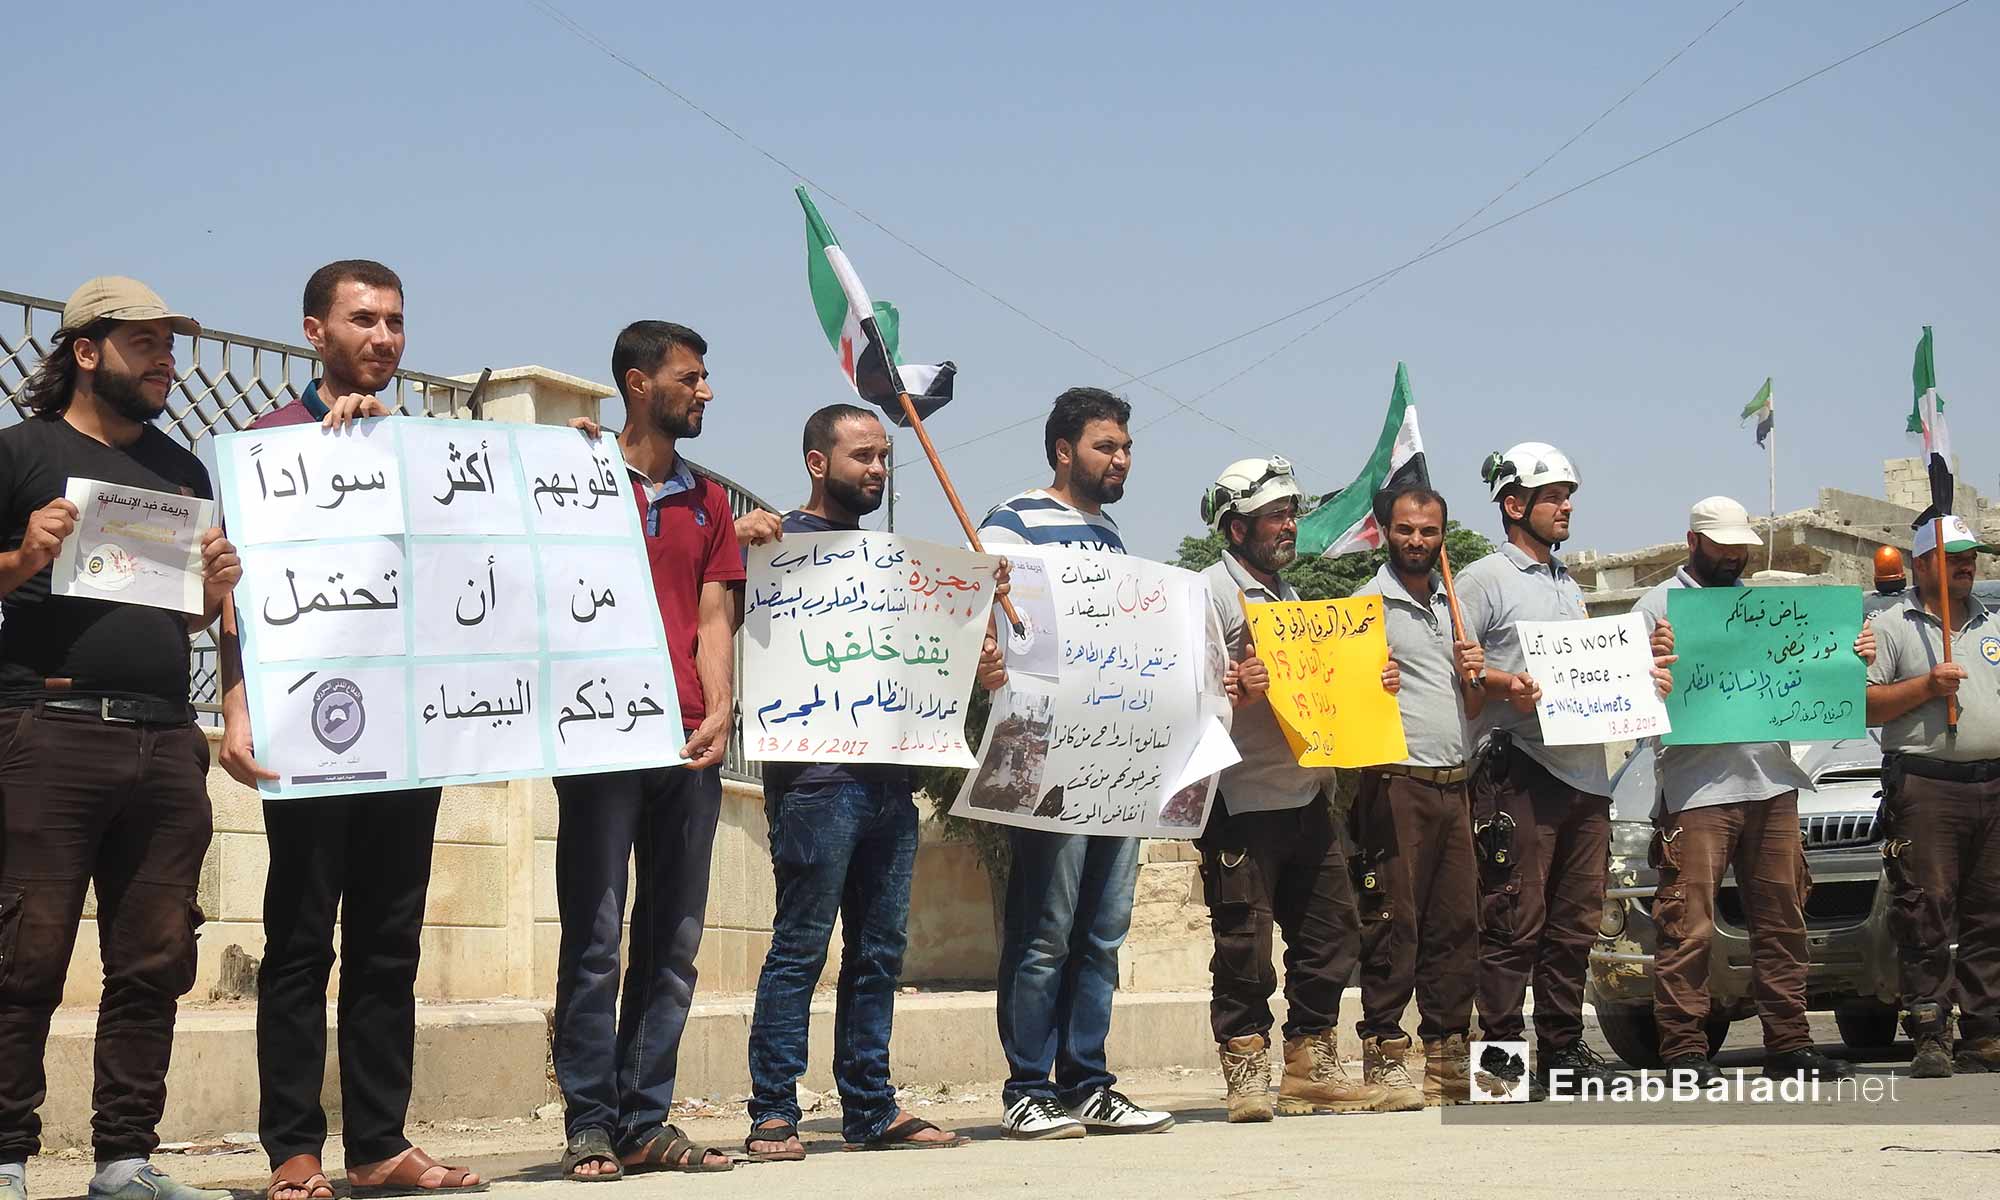 وقفة تضامنية لعناصر الدفاع المدني في مارع بريف حلب الشمالي تضامنًا مع ضحايا المنظمة في سرمين - 13 آب 2017 (عنب بلدي)